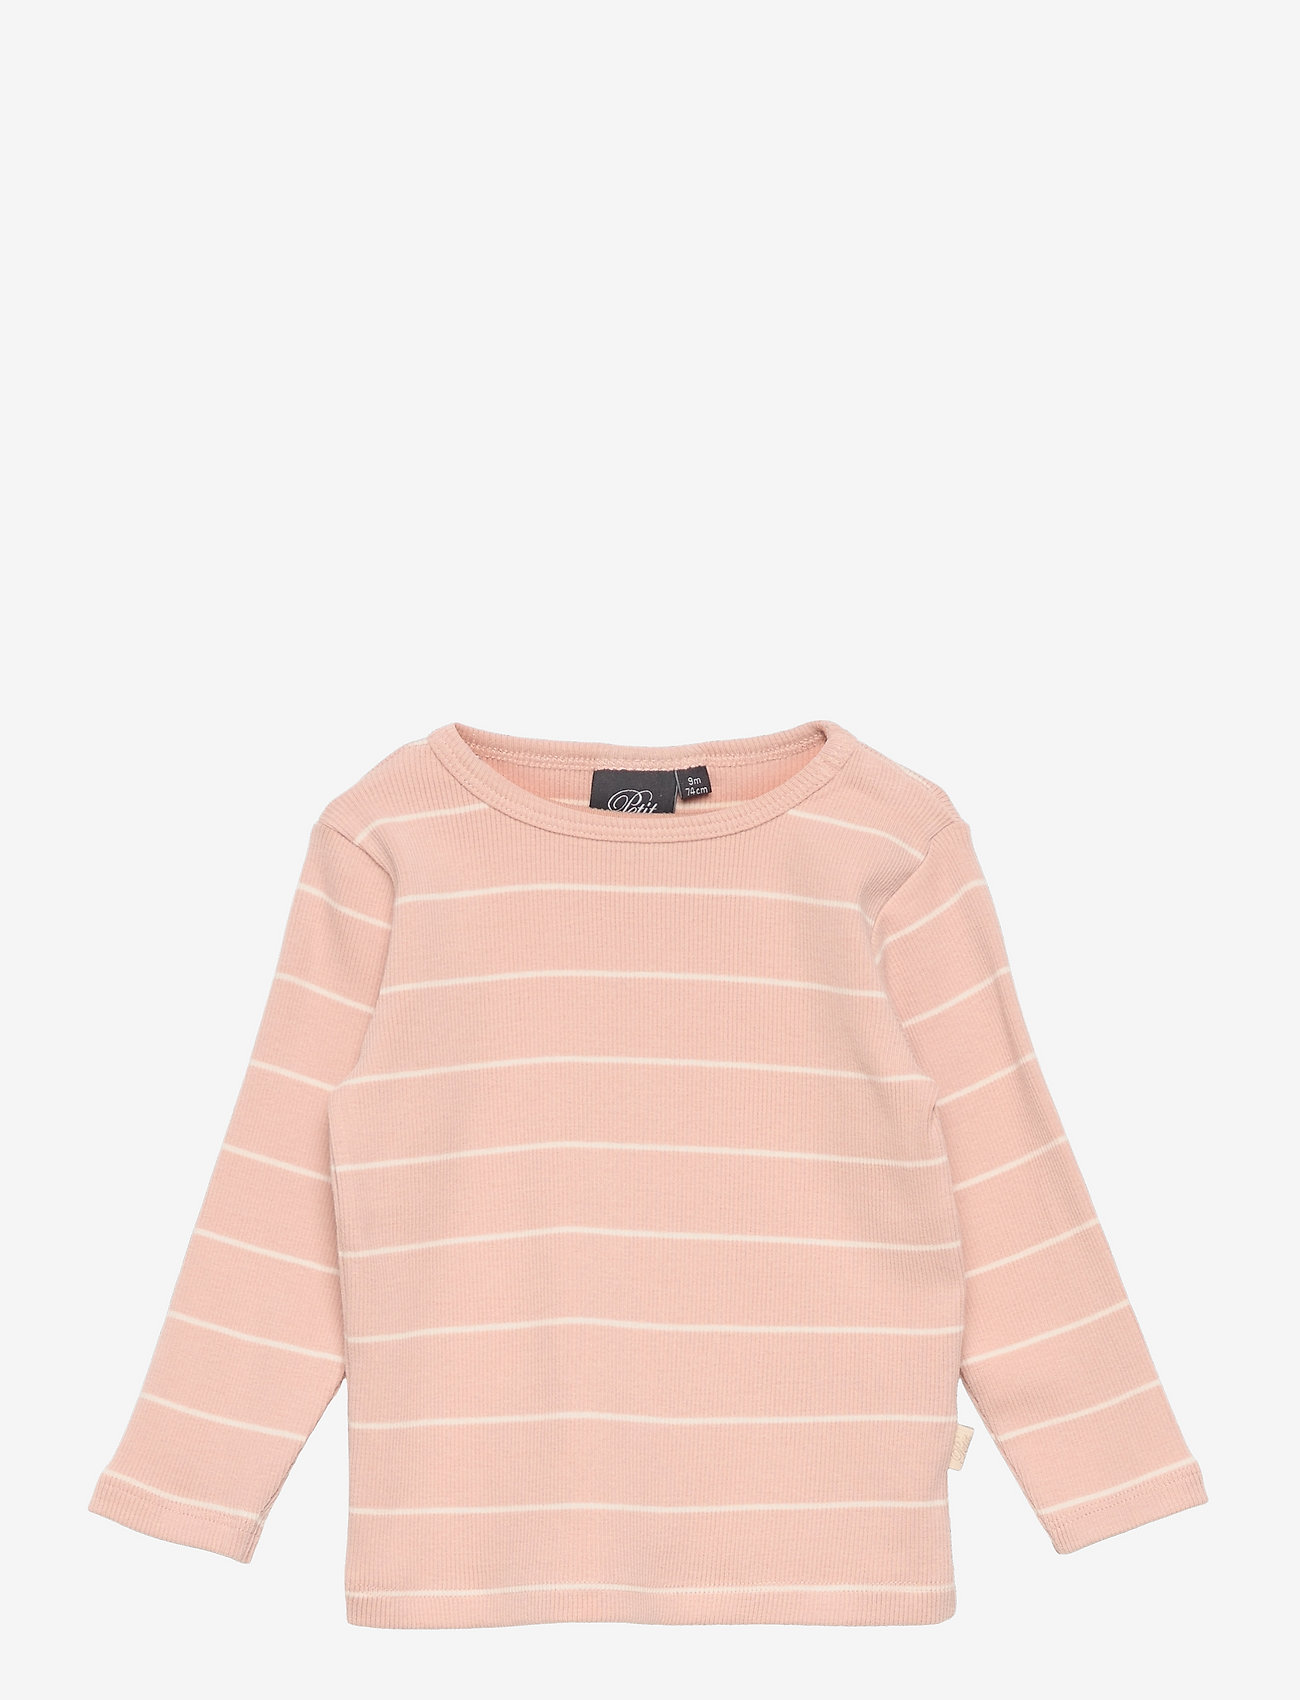 Sofie Schnoor Baby and Kids - T-shirt long-sleeve - marškinėliai ilgomis rankovėmis - light rose - 0